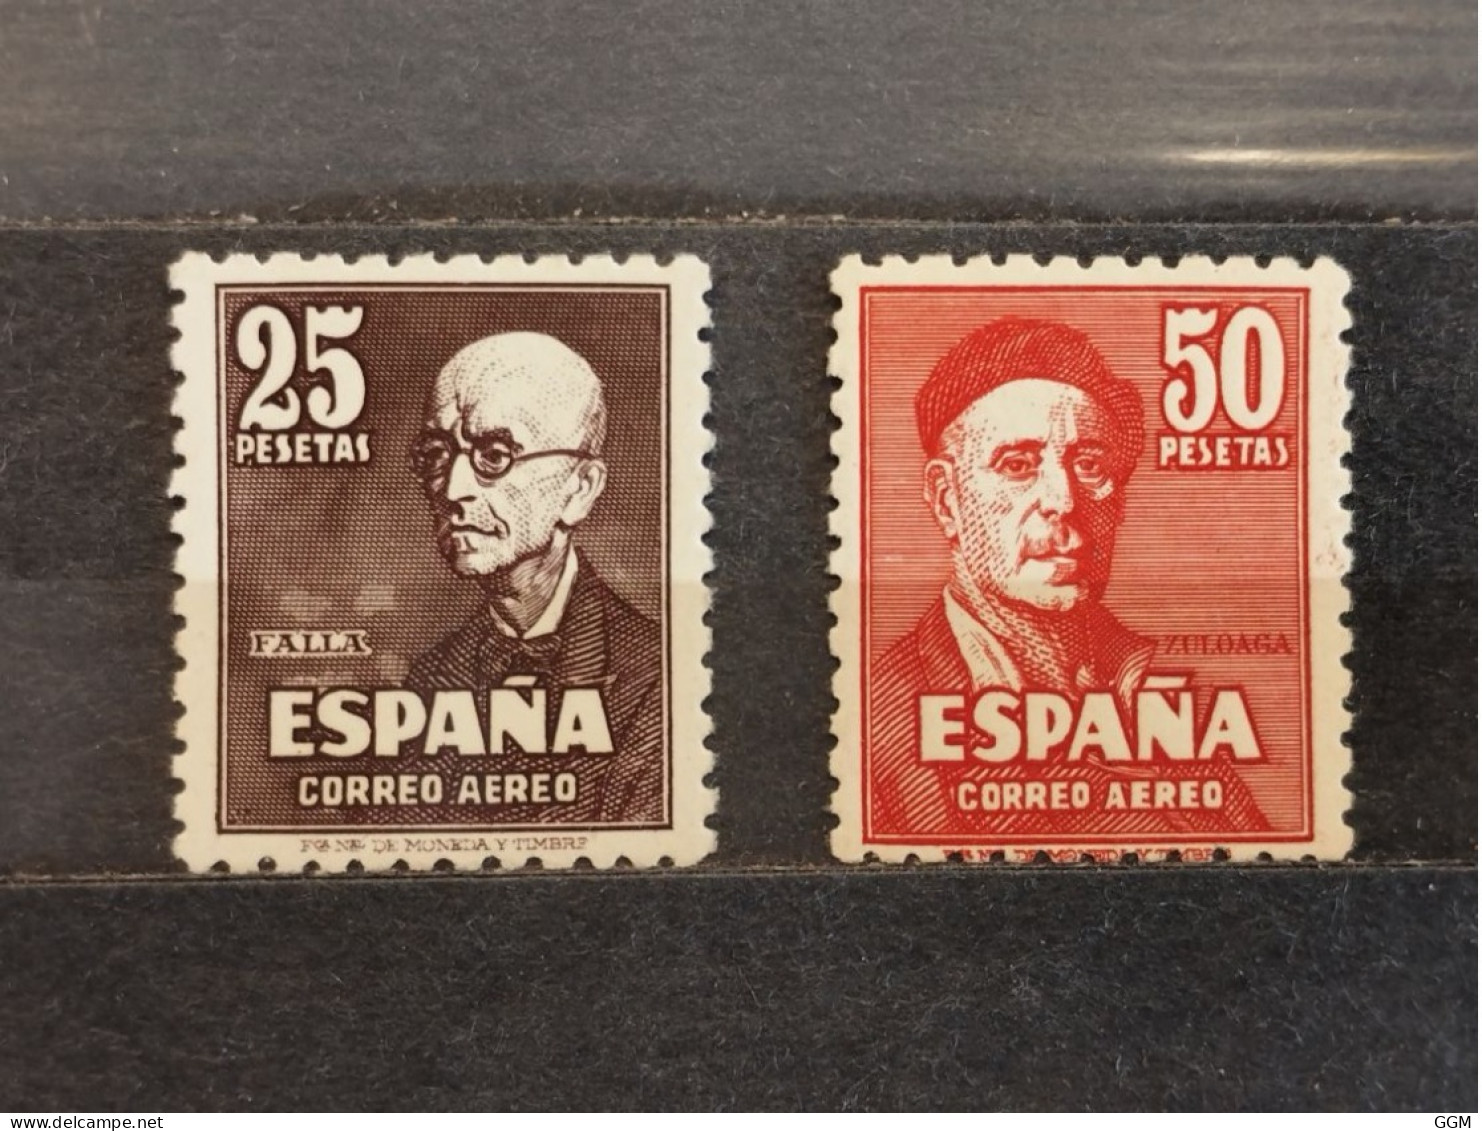 España. 1947. Estado Español. Edifil 1015 Y 1016. Nuevos ** MNH - Neufs